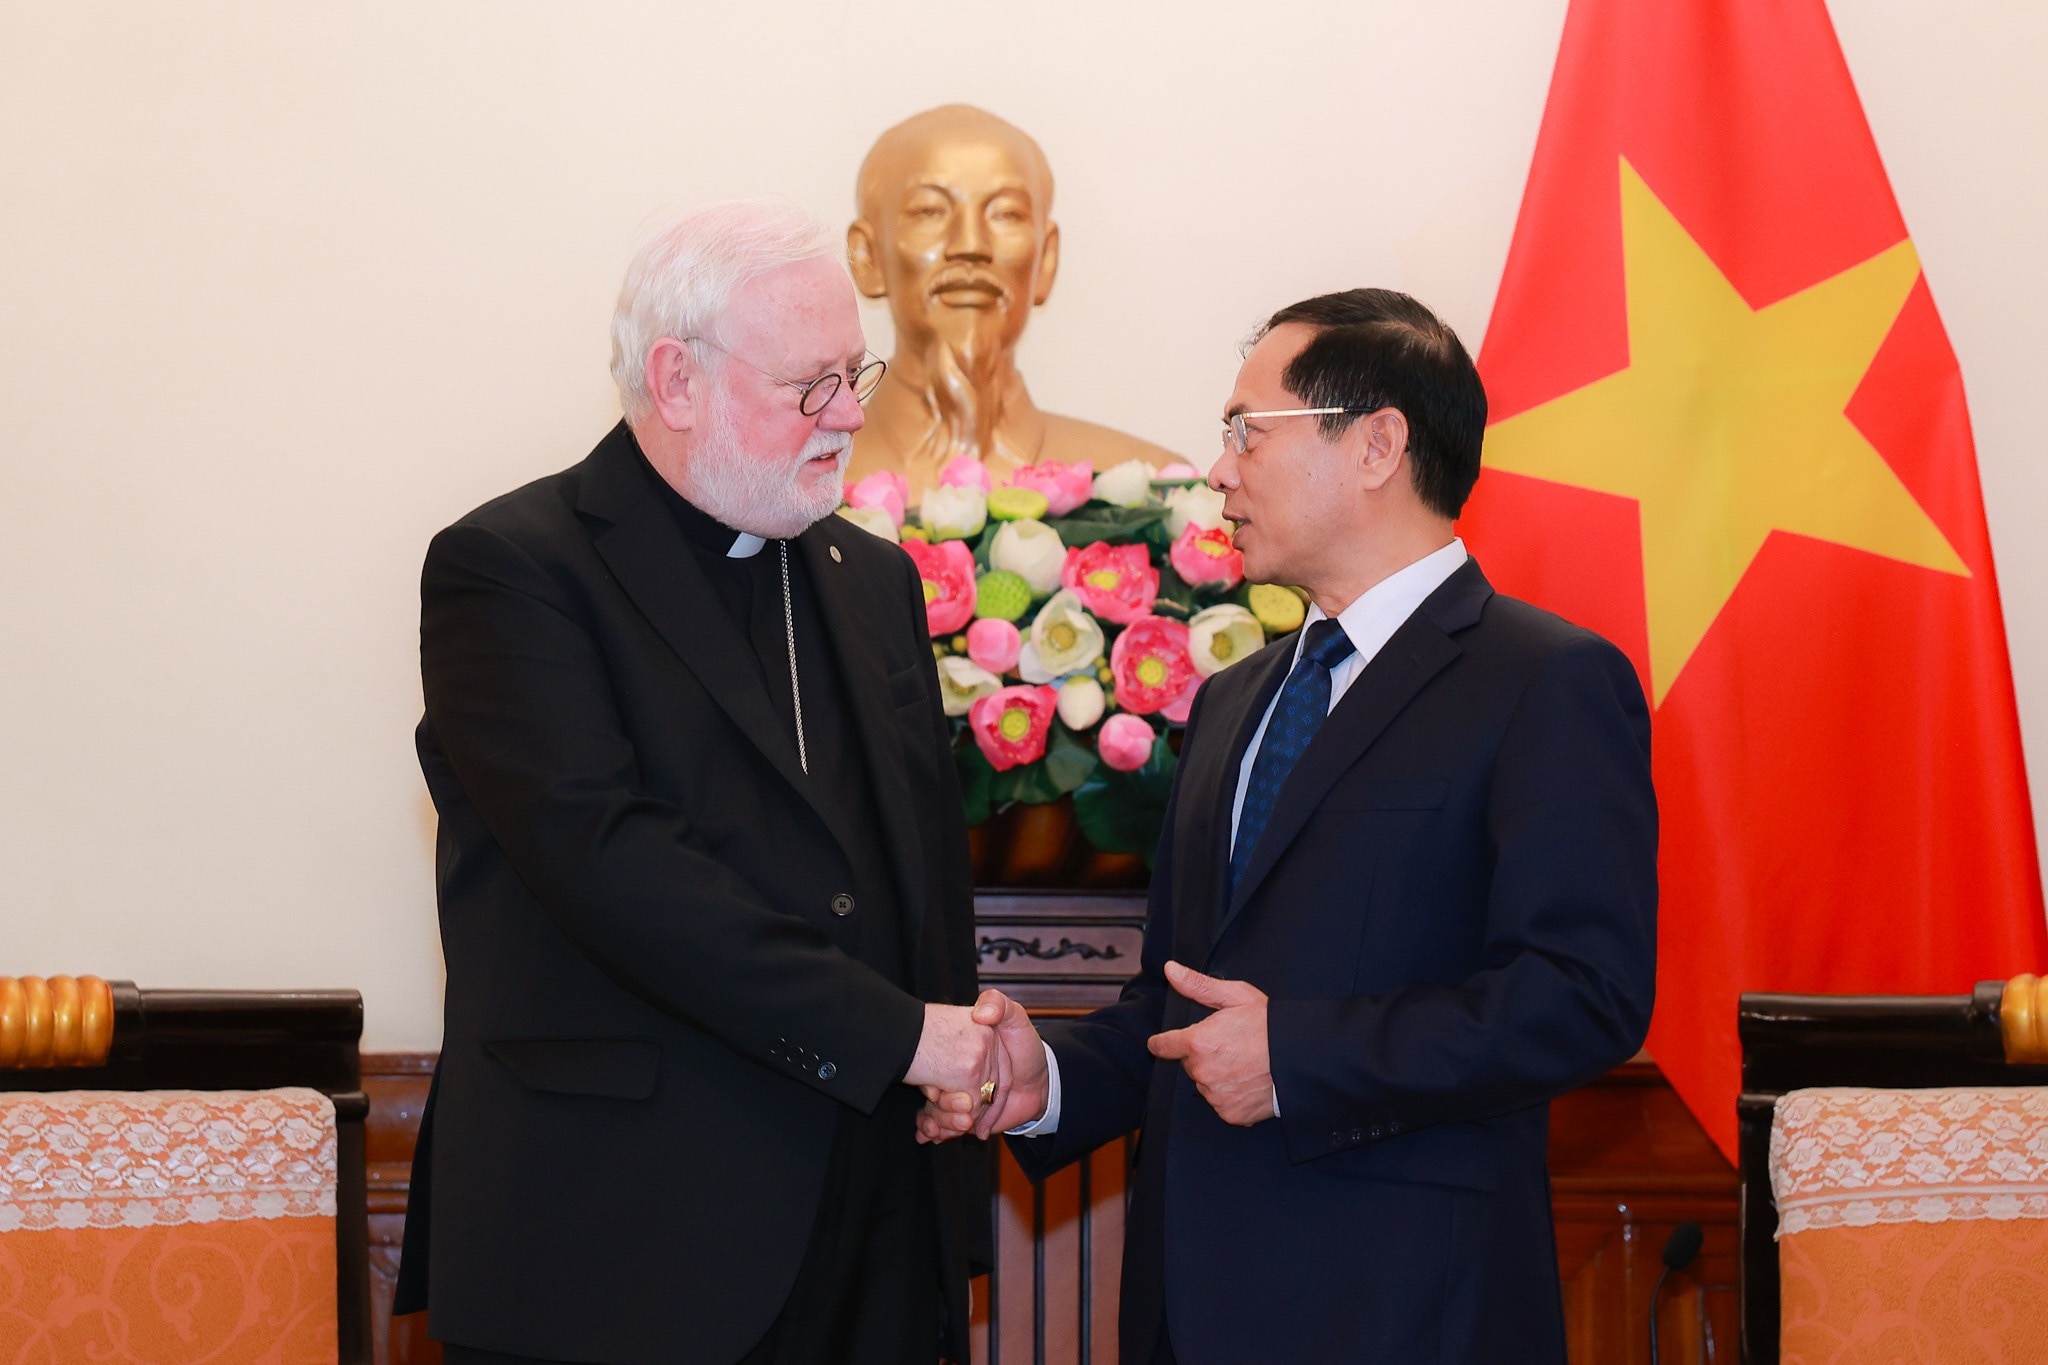 Minister Bui Thanh Son glaubt, dass der Besuch zur Förderung guter Beziehungen zwischen Vietnam und dem Vatikan beitragen wird. Foto: Hai Nguyen